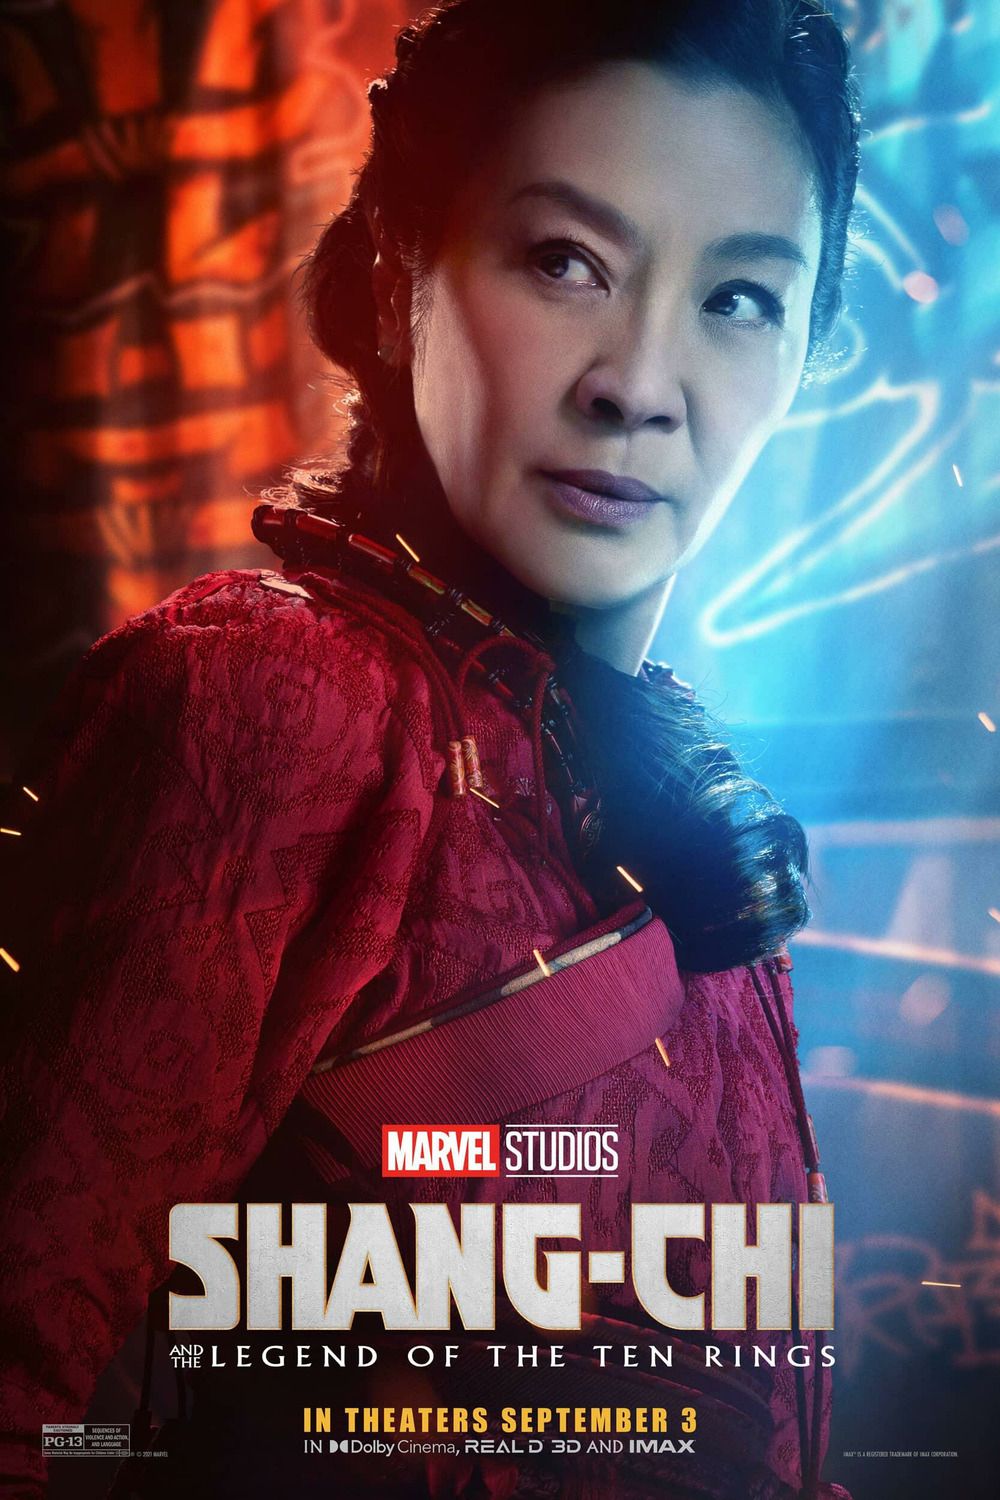 Shang Chi Character Poster Image #4